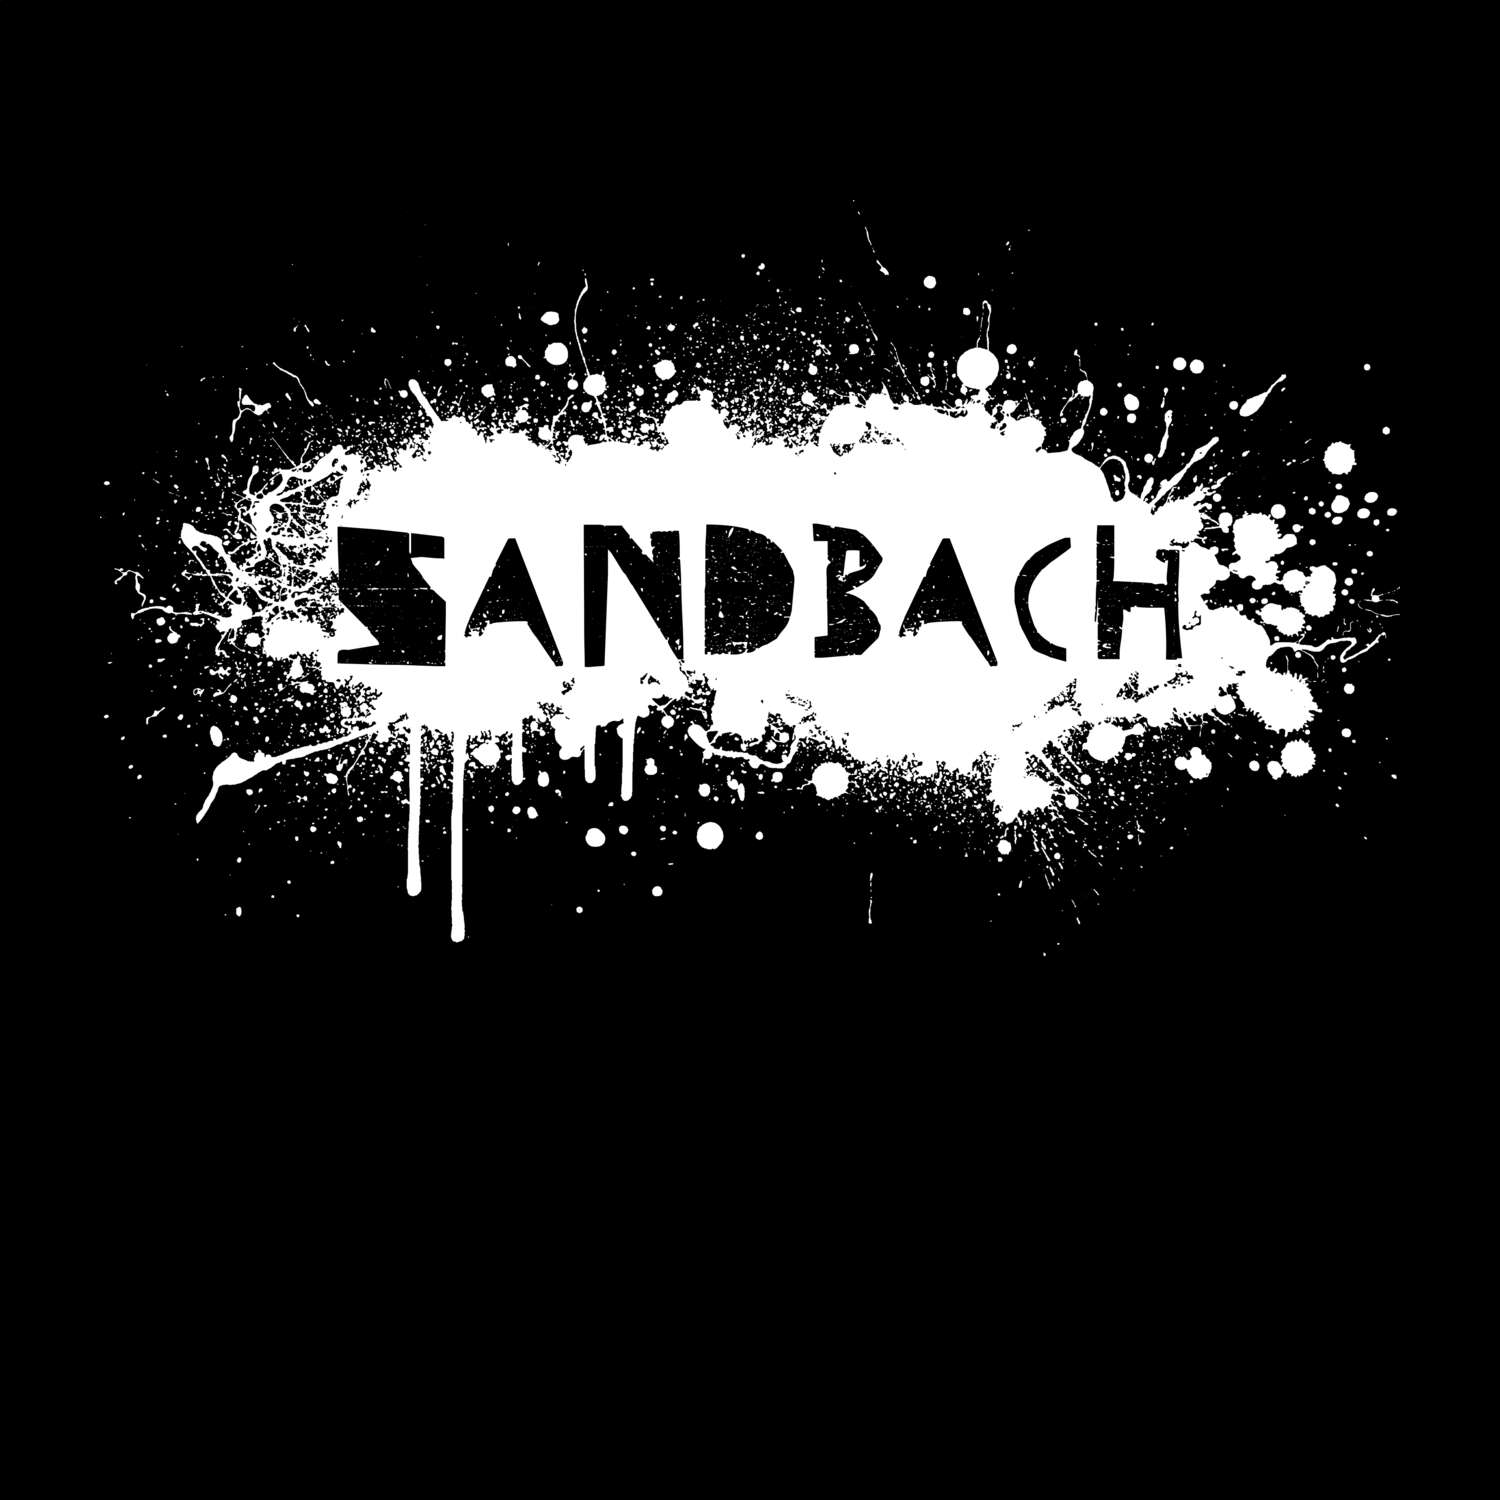 Sandbach T-Shirt »Paint Splash Punk«